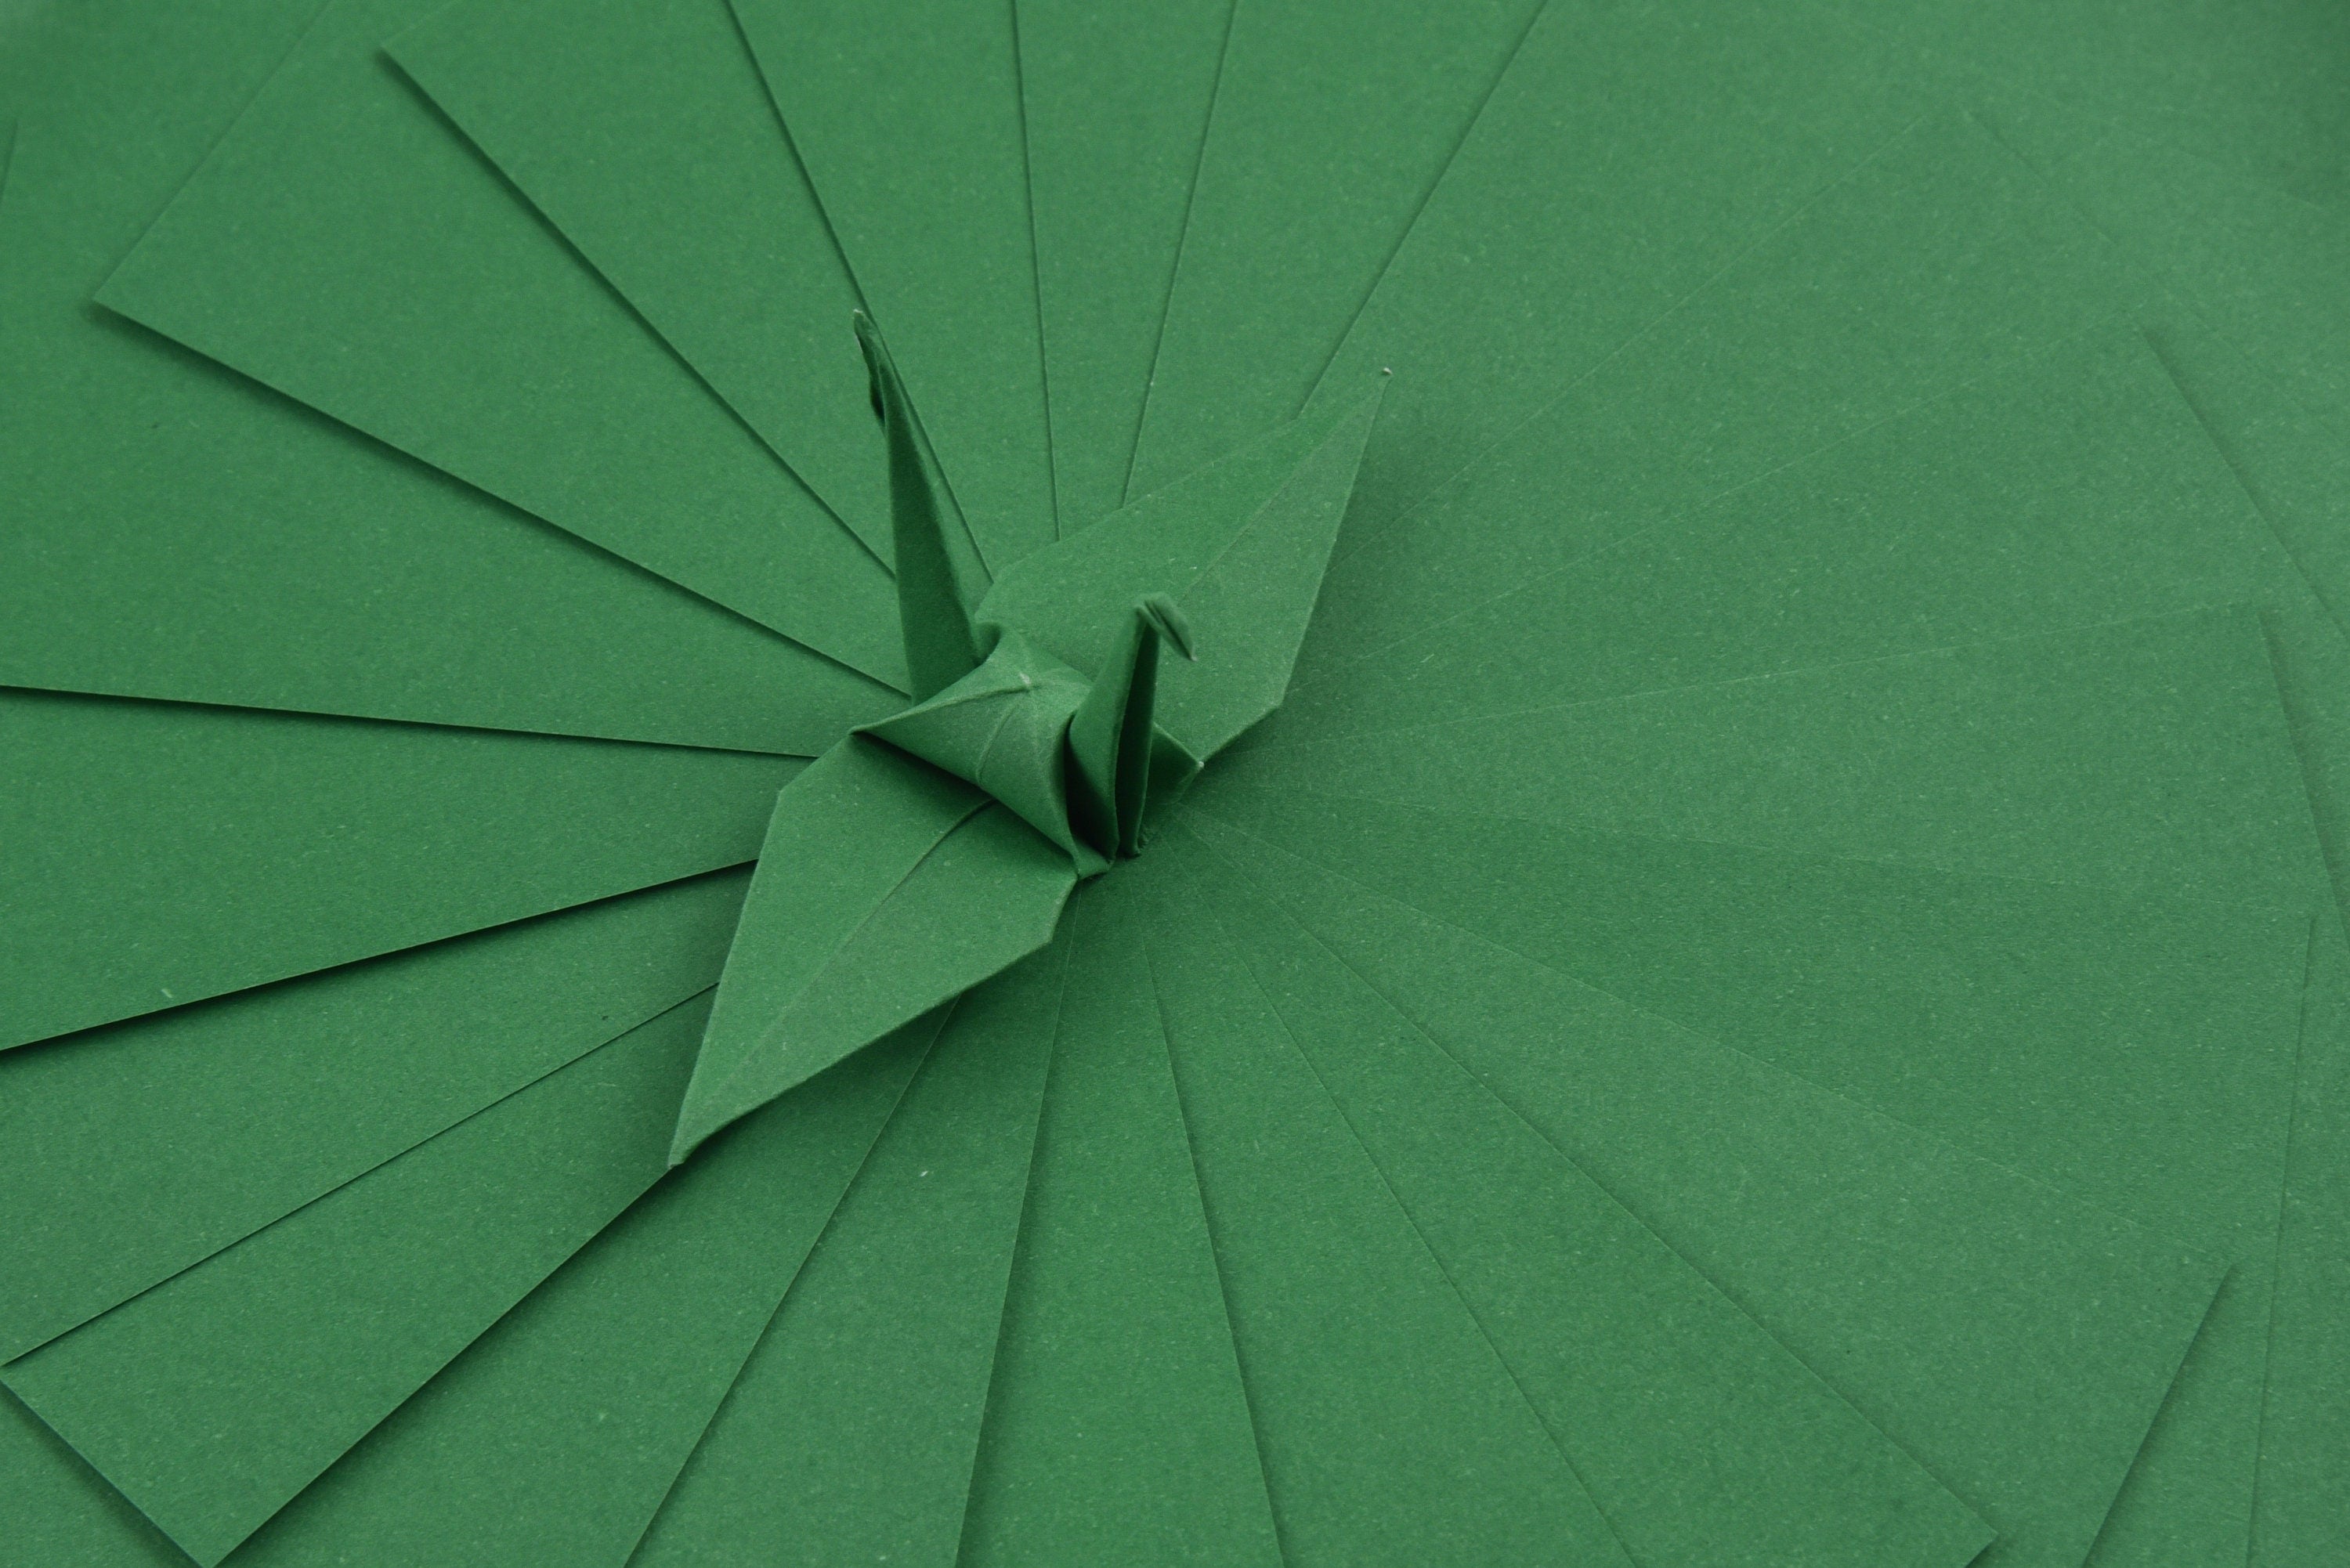 100 fogli di carta verde per origami - 6 x 6 pollici - confezione di carta quadrata per piegare, gru origami e decorazioni - S24